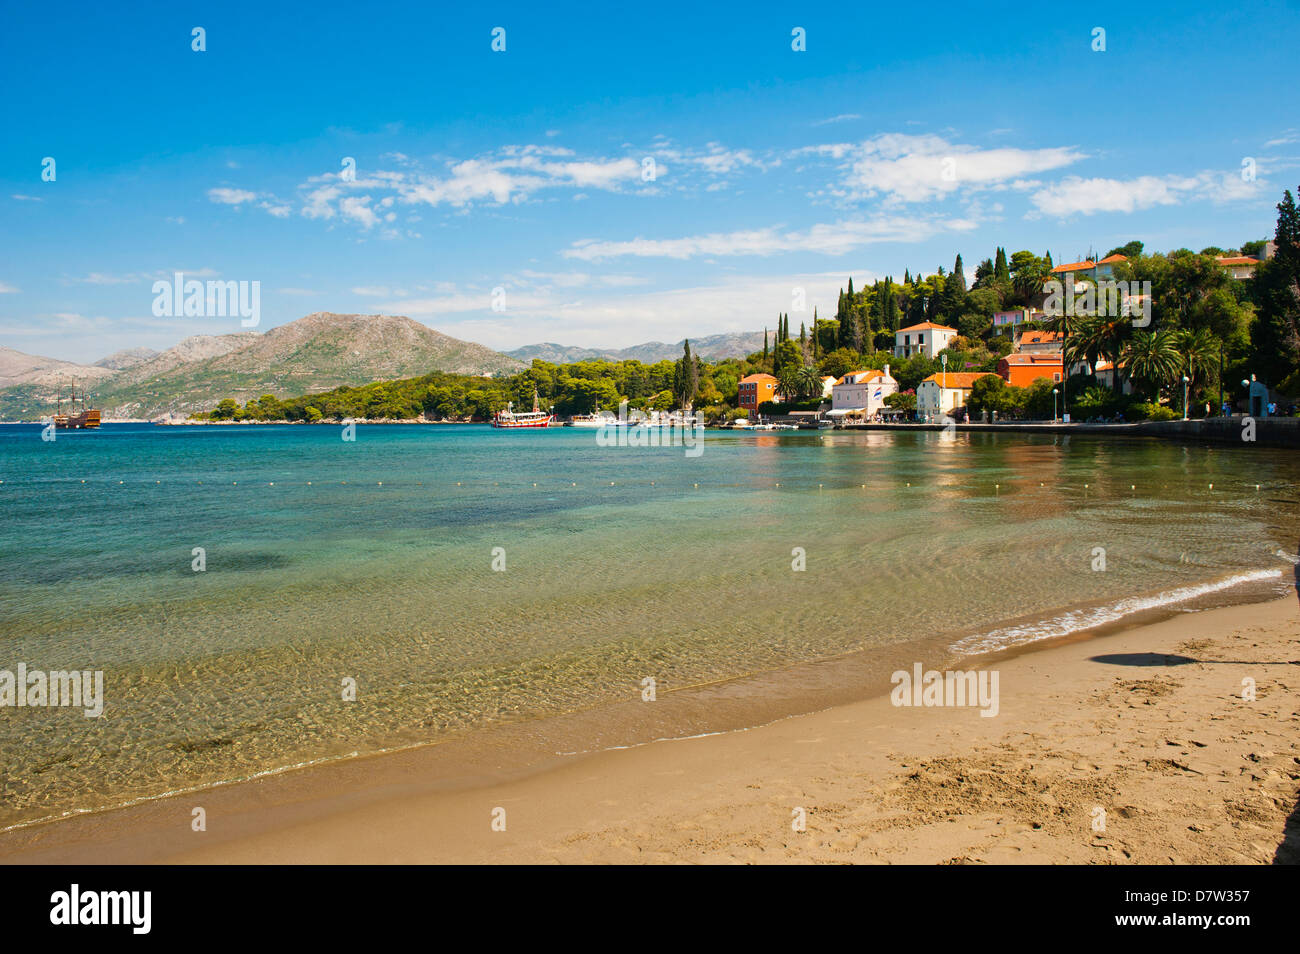 Kolocep, plage de l'île Kolocep, les îles Élaphites (Elaphites), de la côte dalmate, Mer Adriatique, Croatie Banque D'Images